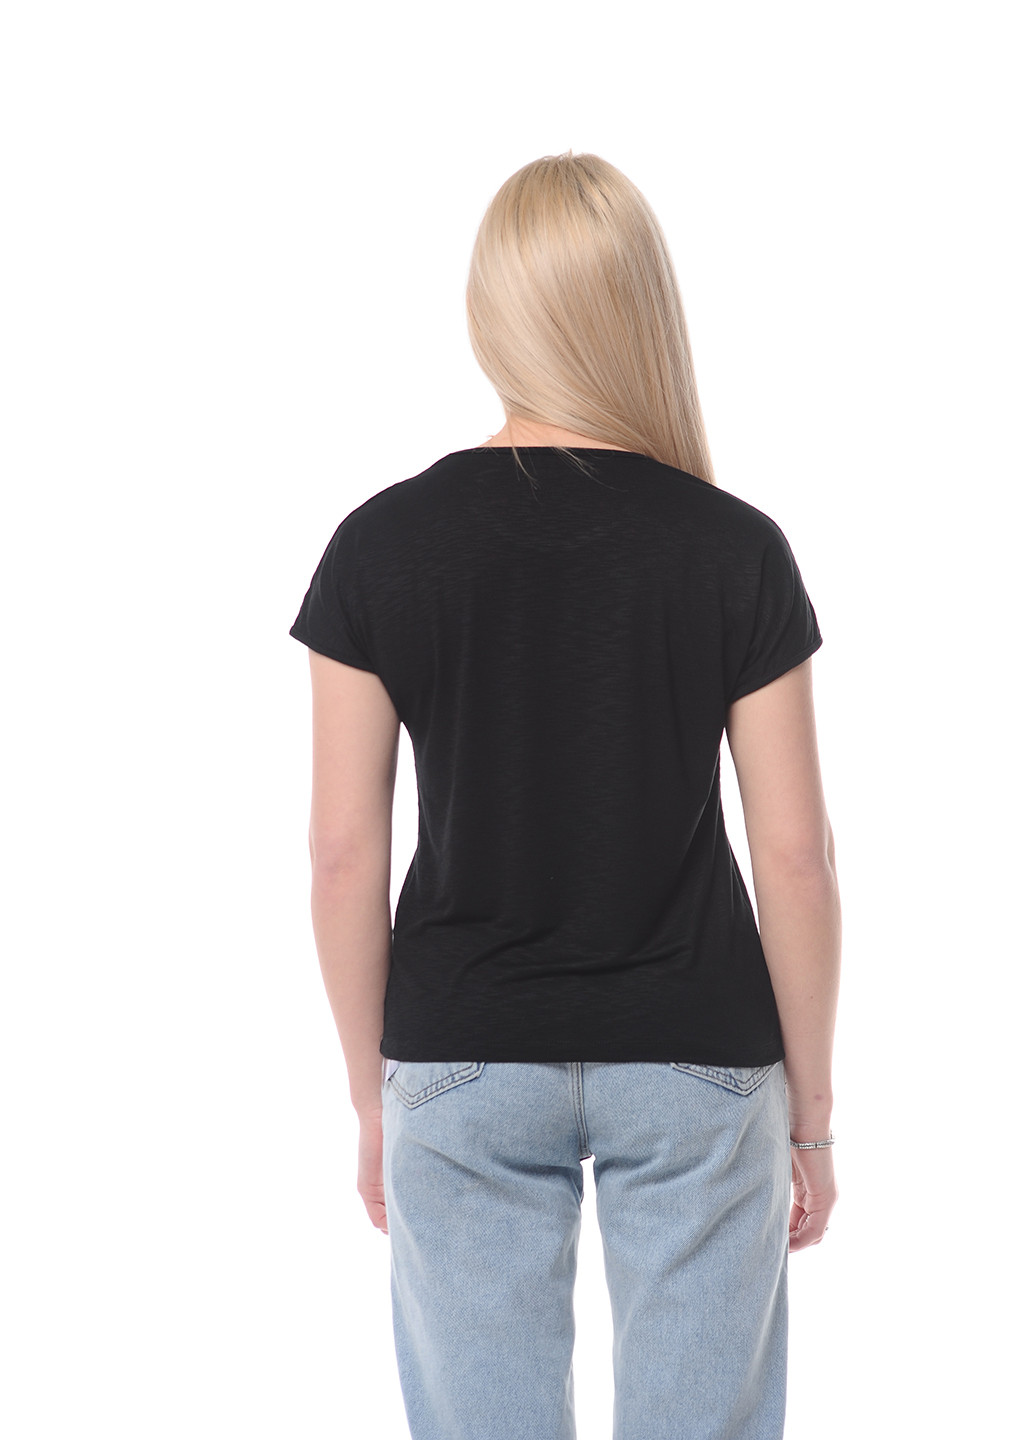 Черная всесезон футболка женская Наталюкс 80-2350